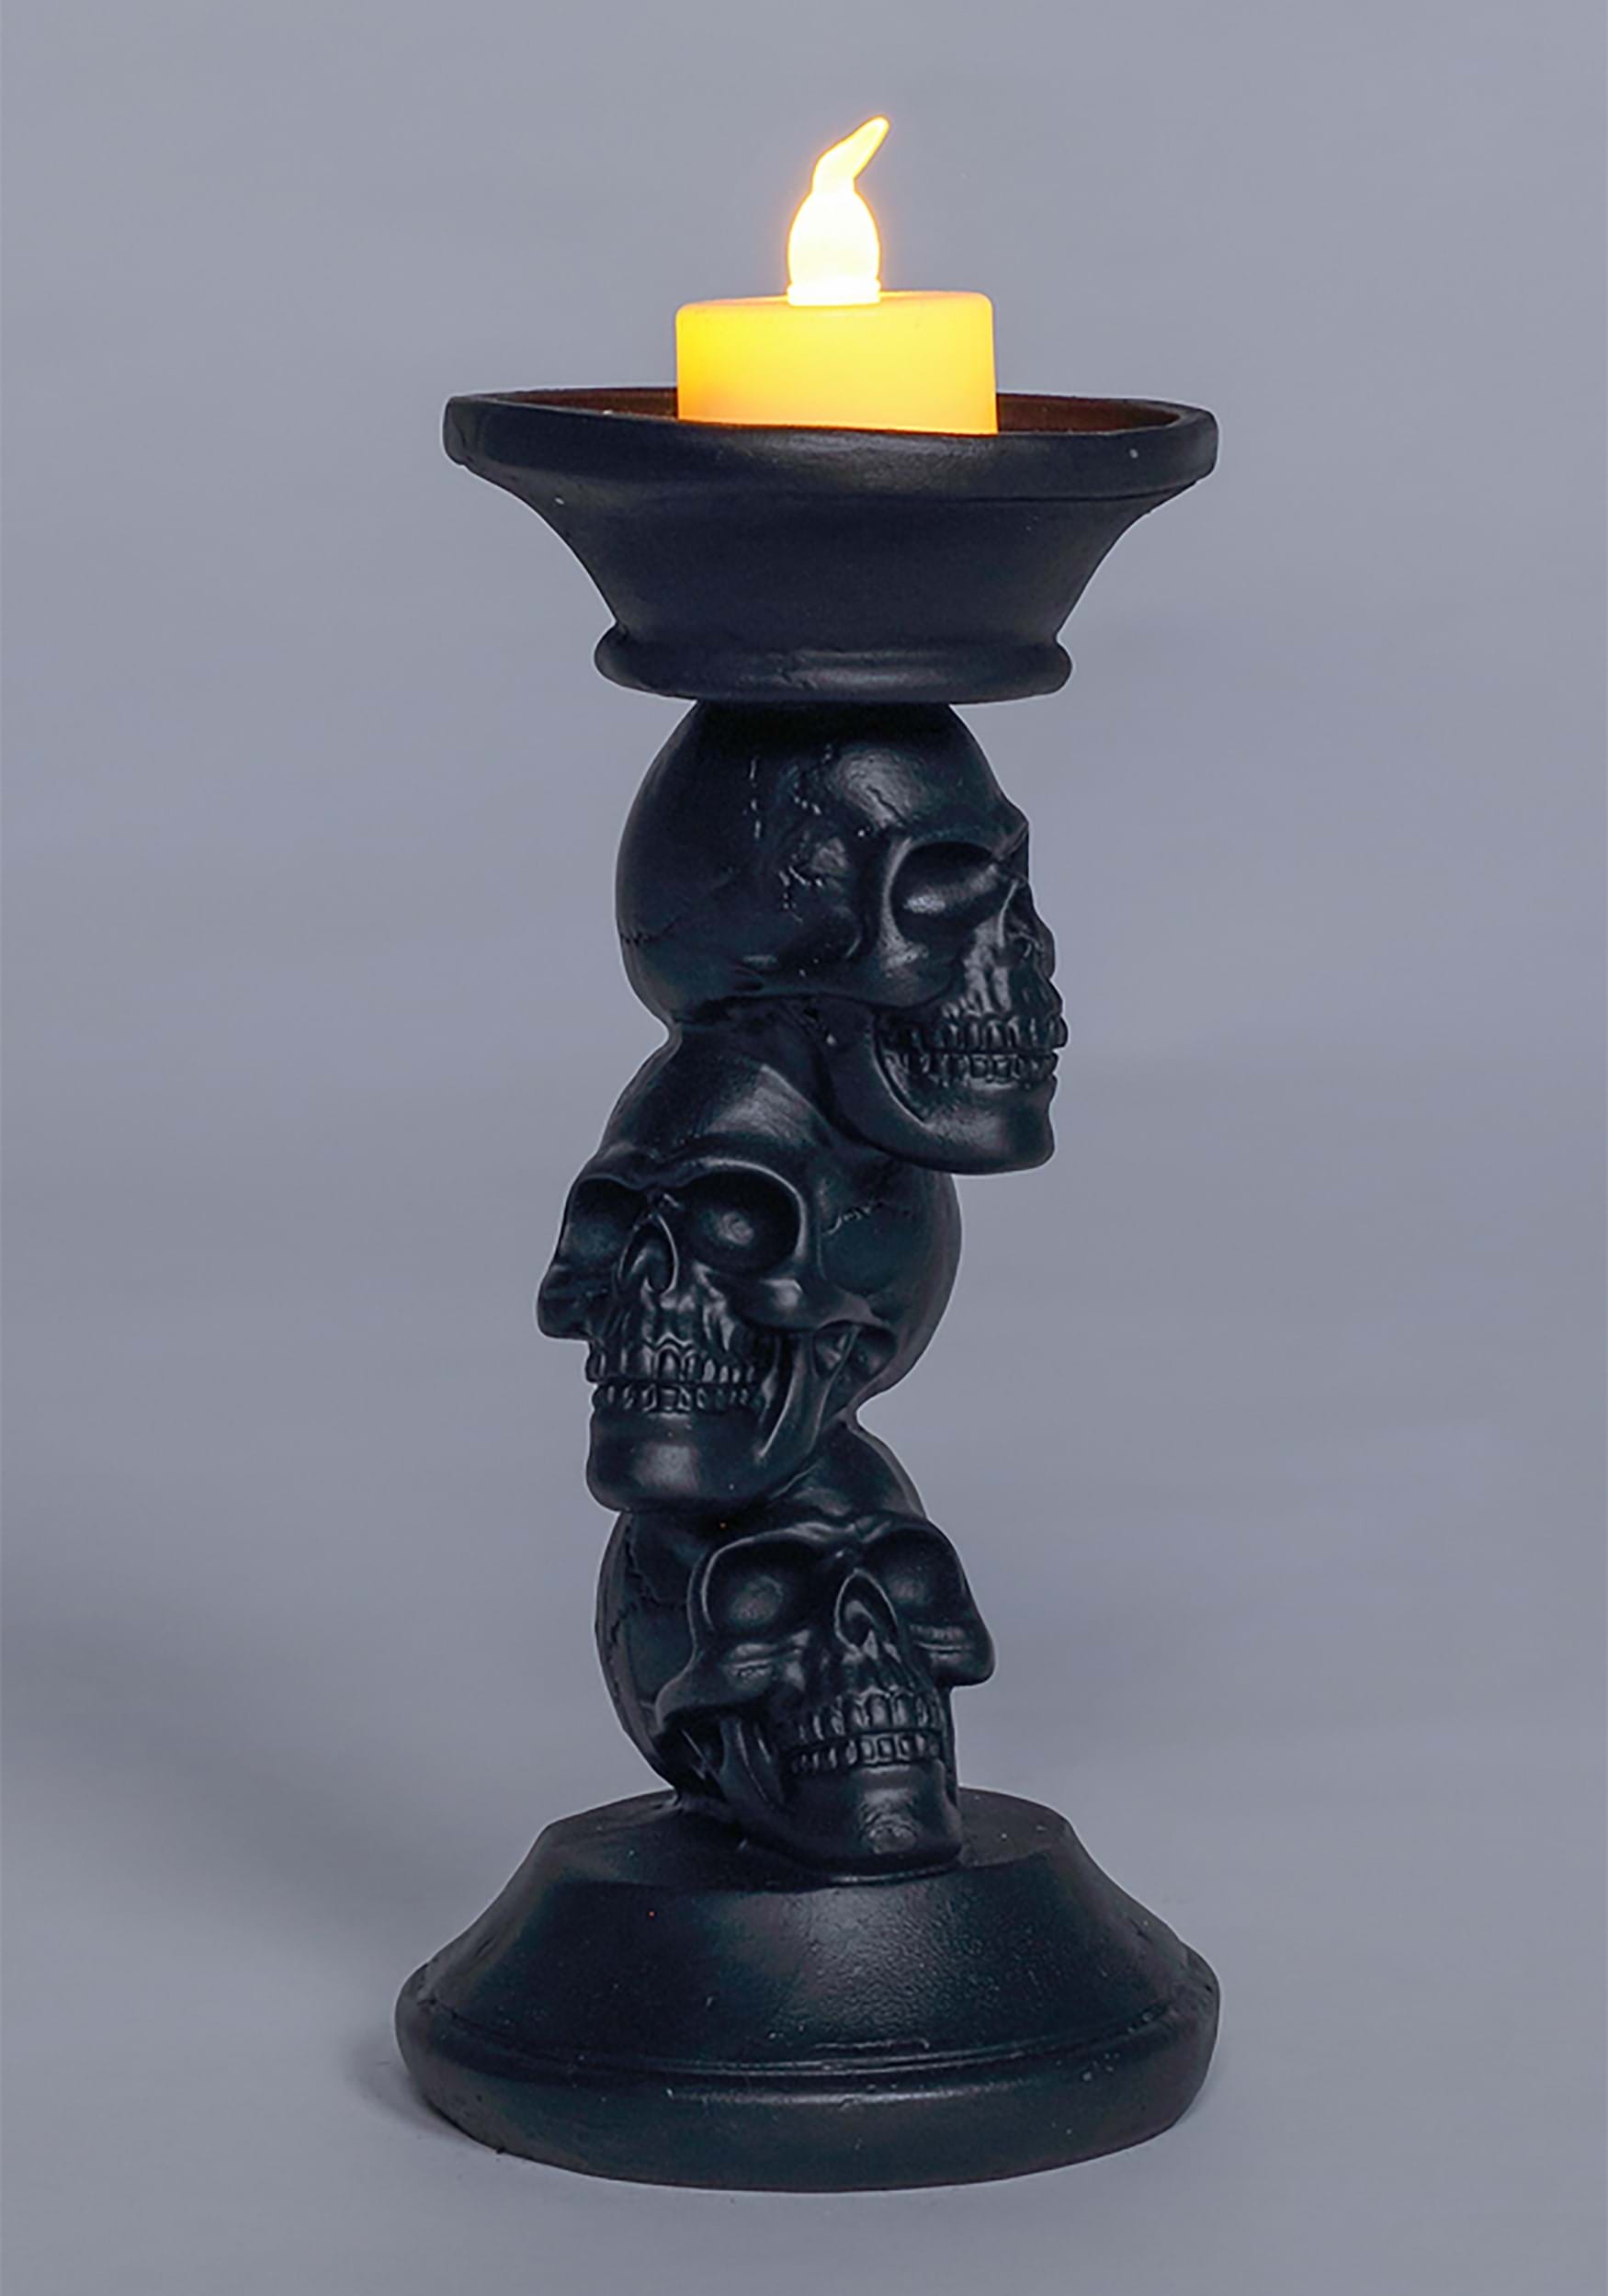 7" Resin Black Skull Candle Holder Prop